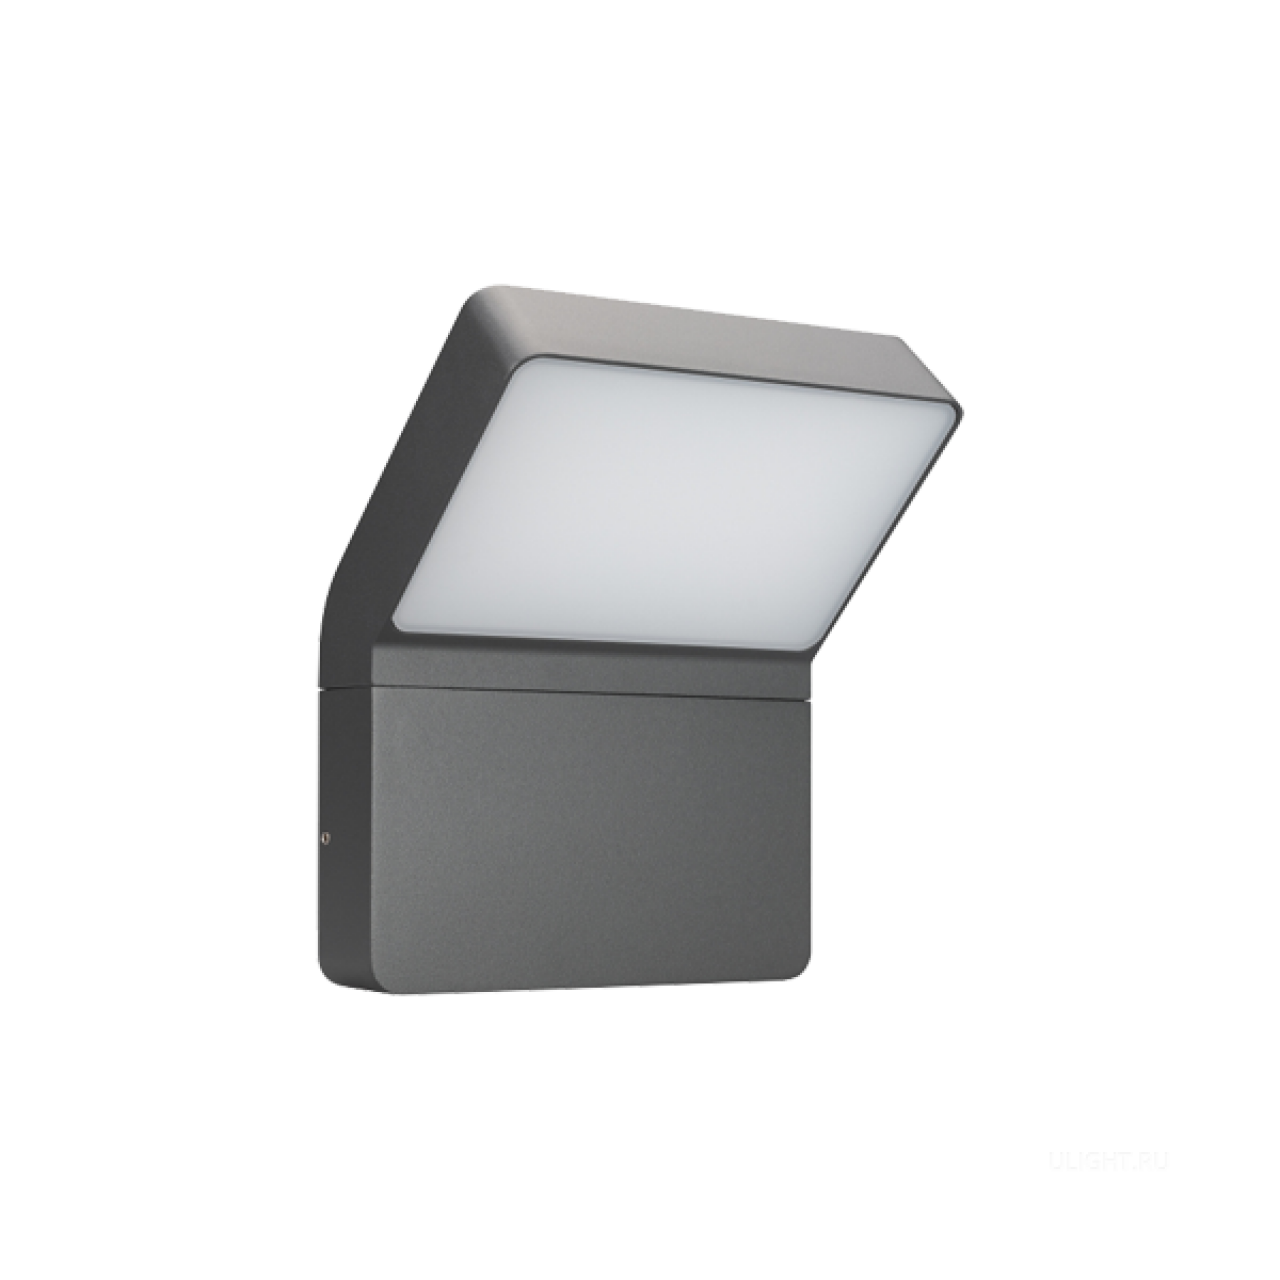 Настенный светильник для подсветки входных групп и фасадов зданий. Влагозащищенный корпус IP65 - серый алюминий, экран из поликарбоната. Питание 220В, мощность 9Вт.